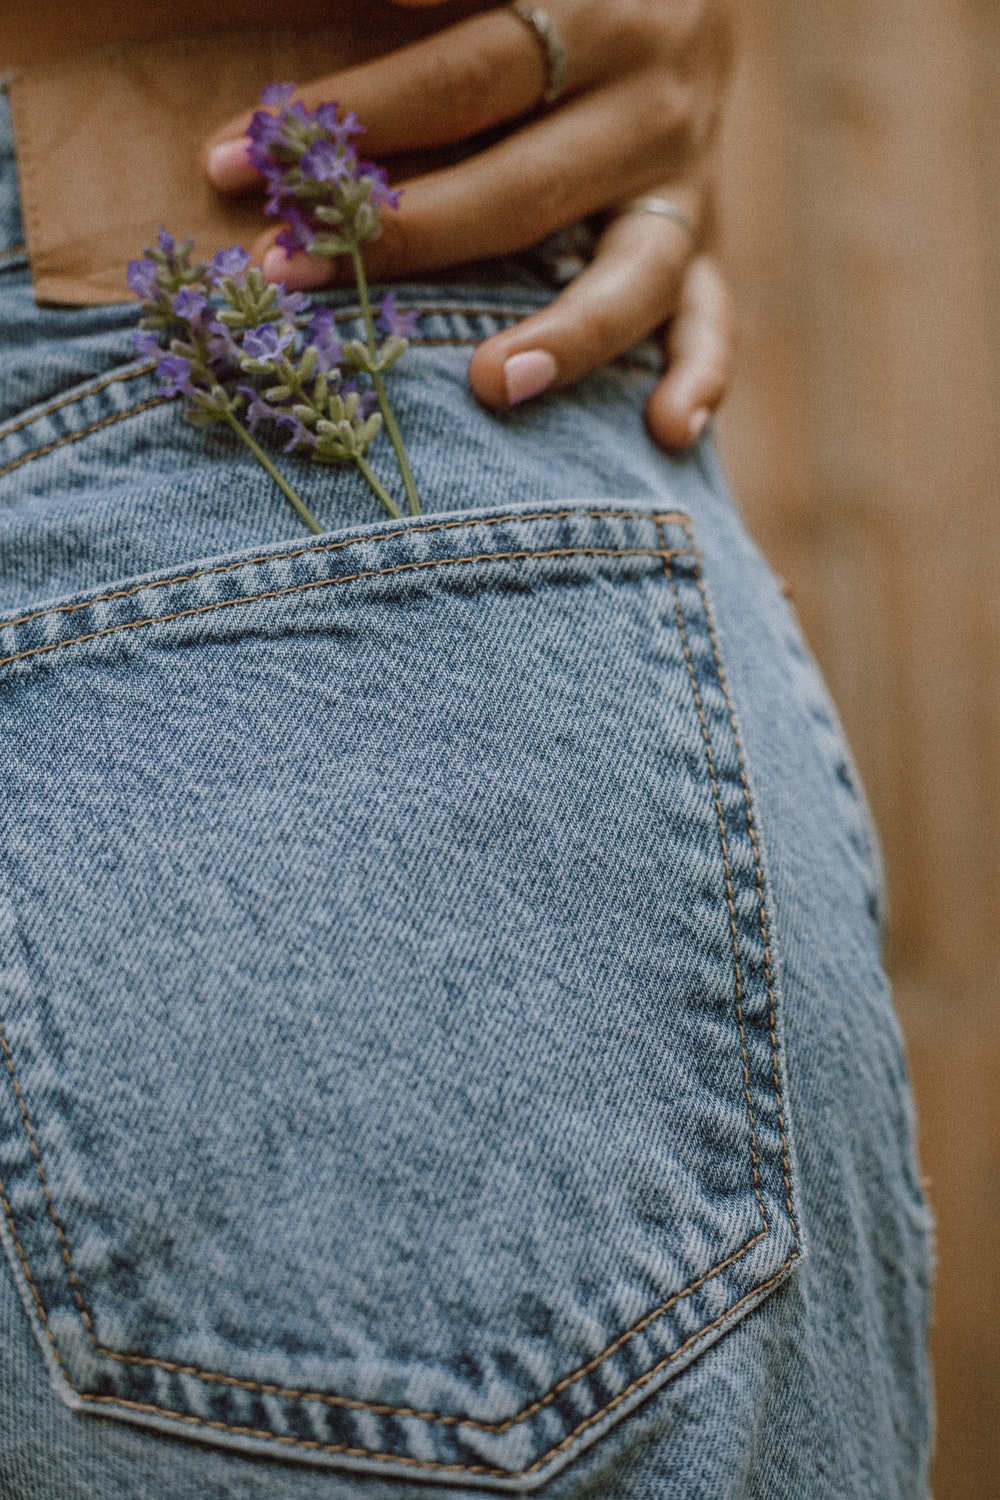 A few lavender plants in a jean pocket.